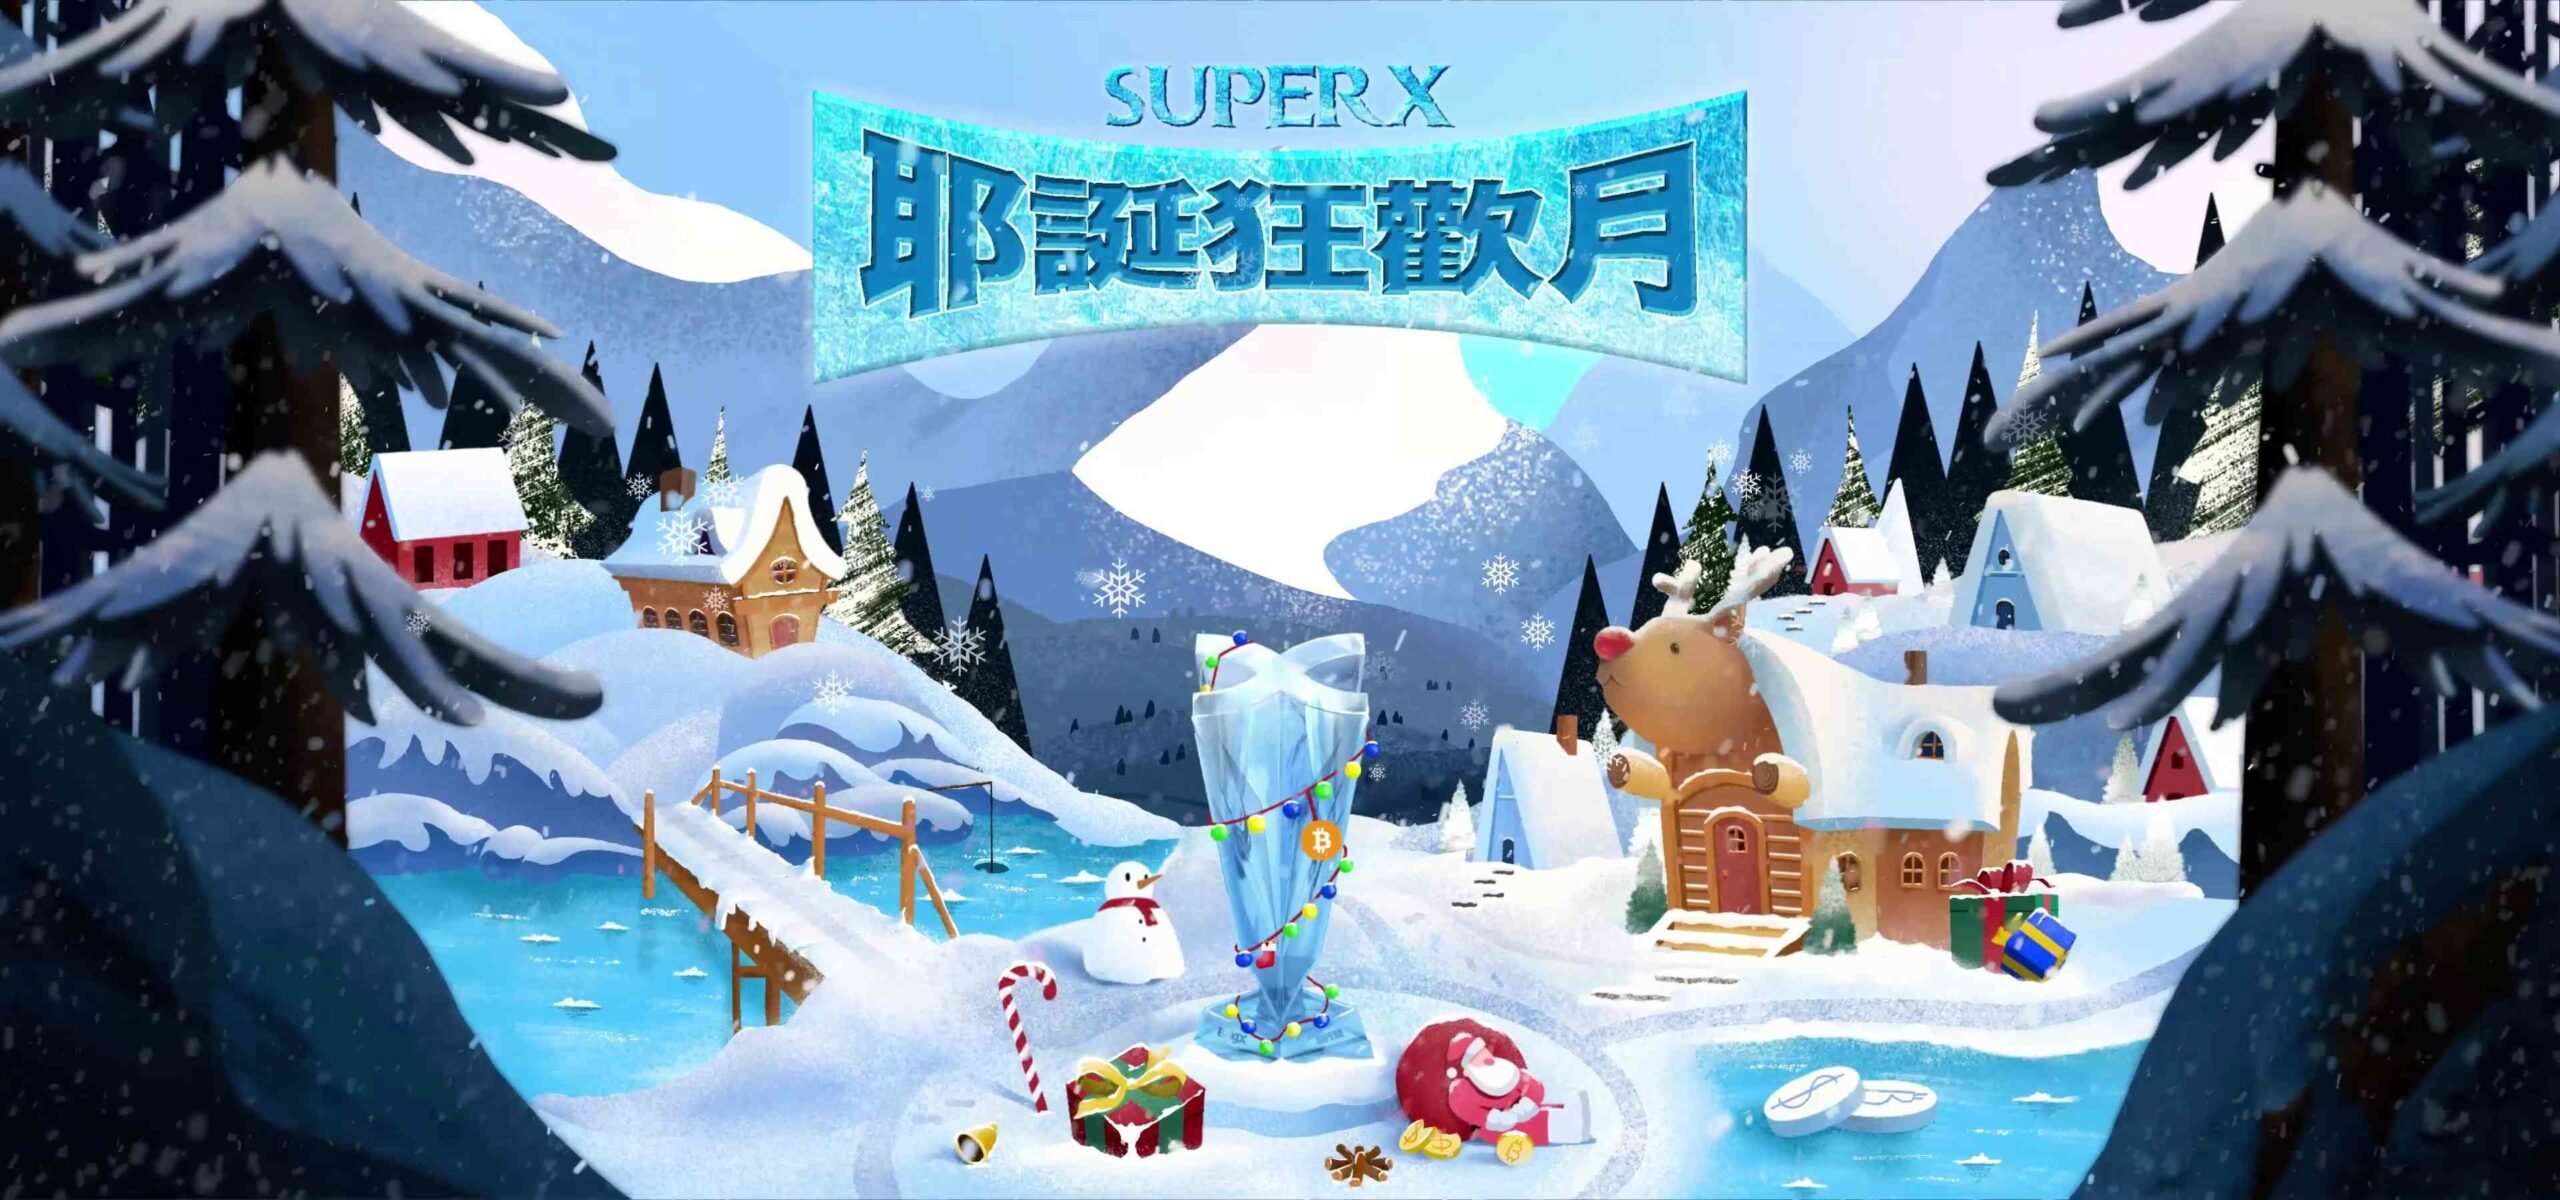 加密貨幣交易所bingx宣布-superx-交易大賽推出專屬耶誕節獎勵